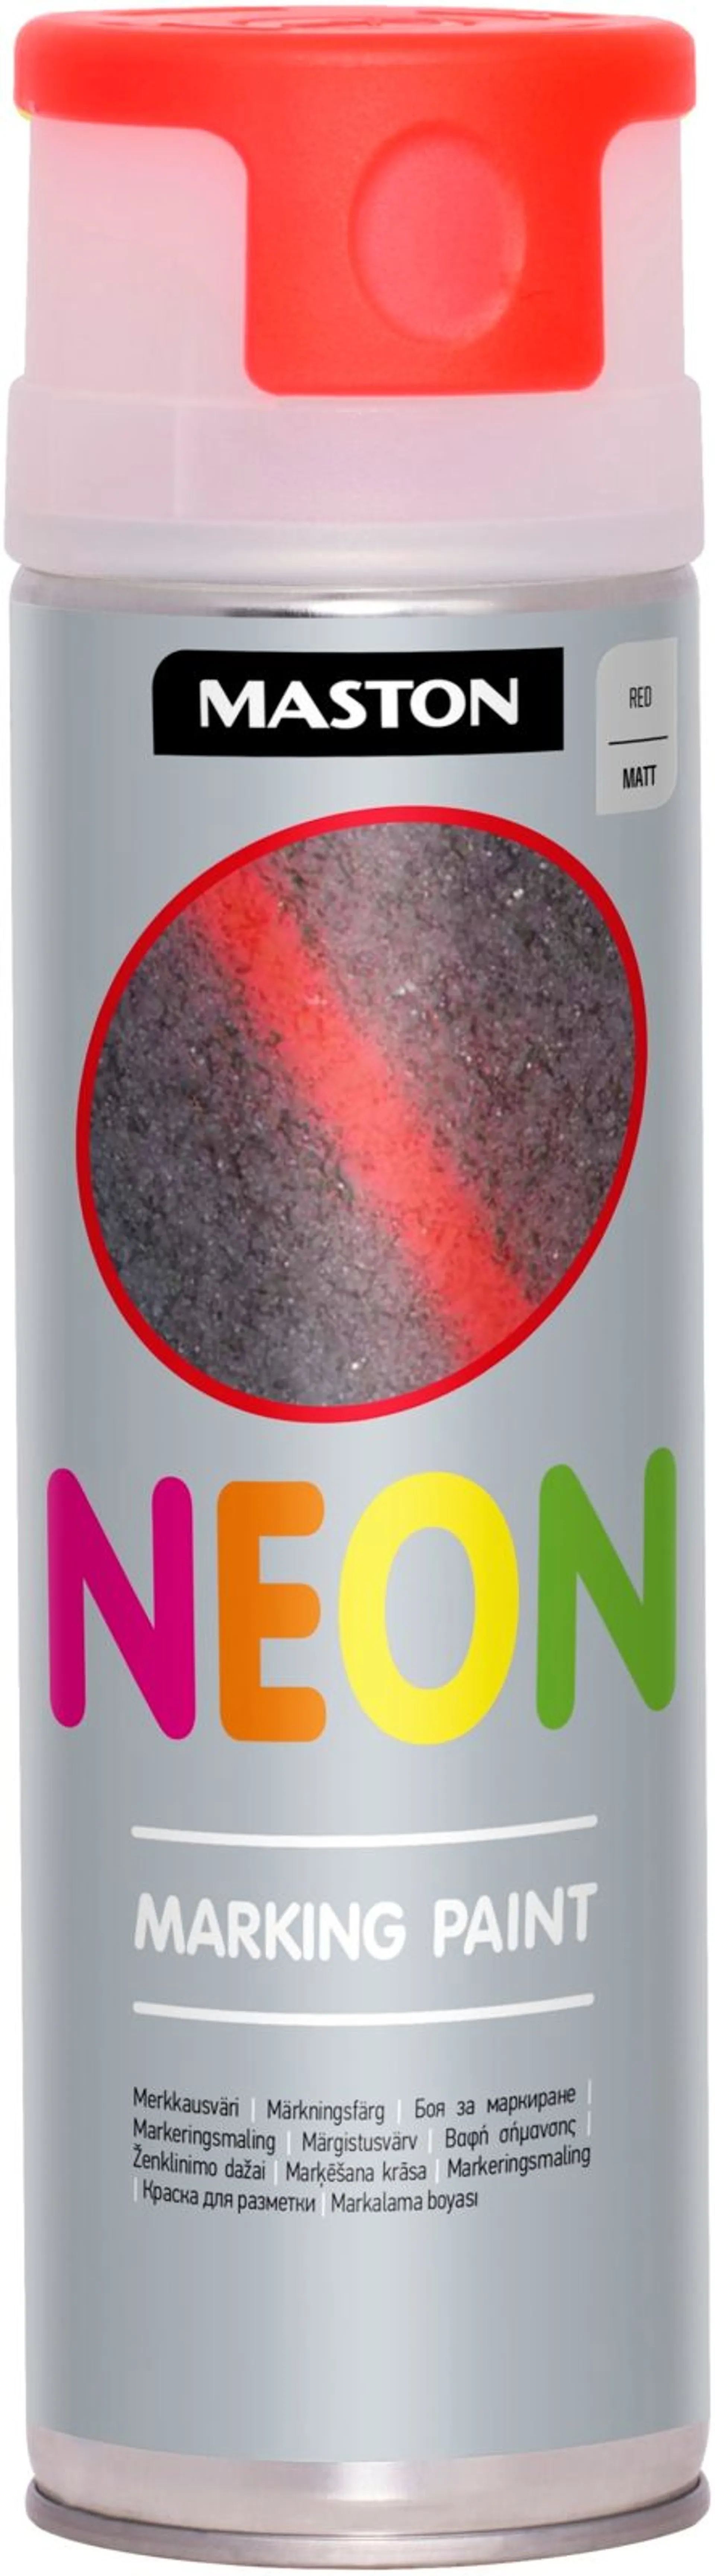 Maston Neon merkkausvärispray 500 ml punainen